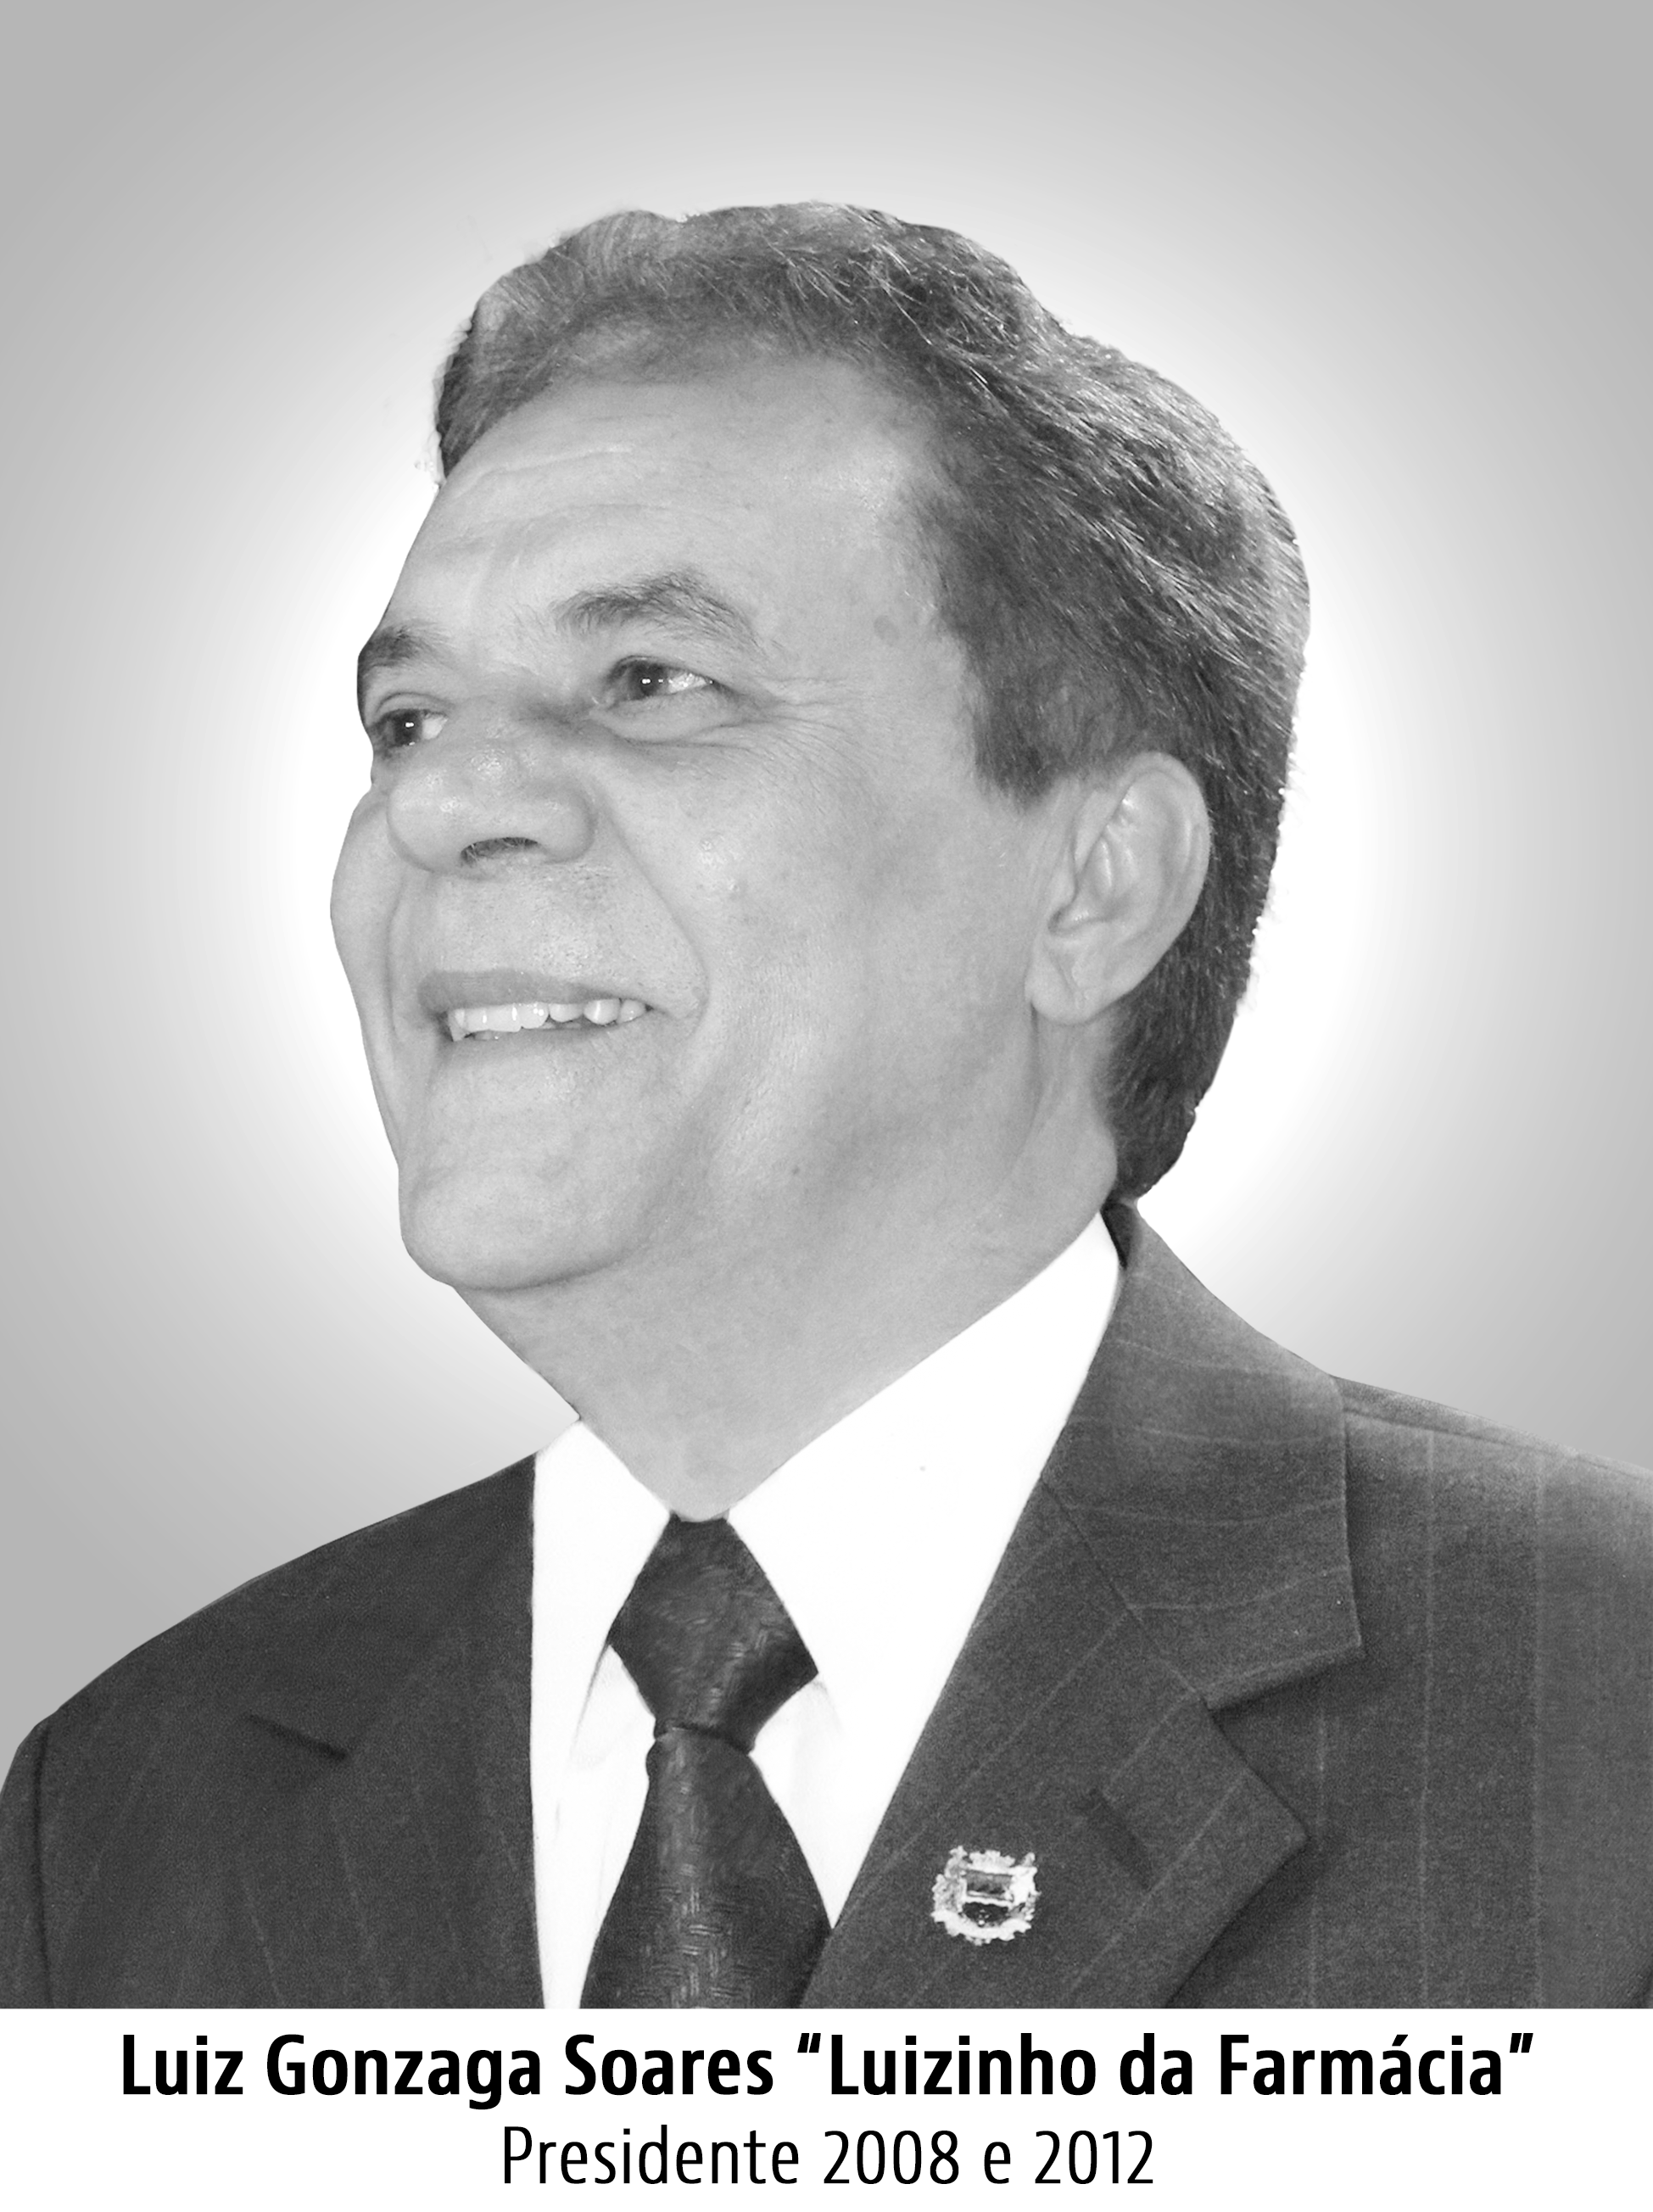 Luiz Gonzaga Soares